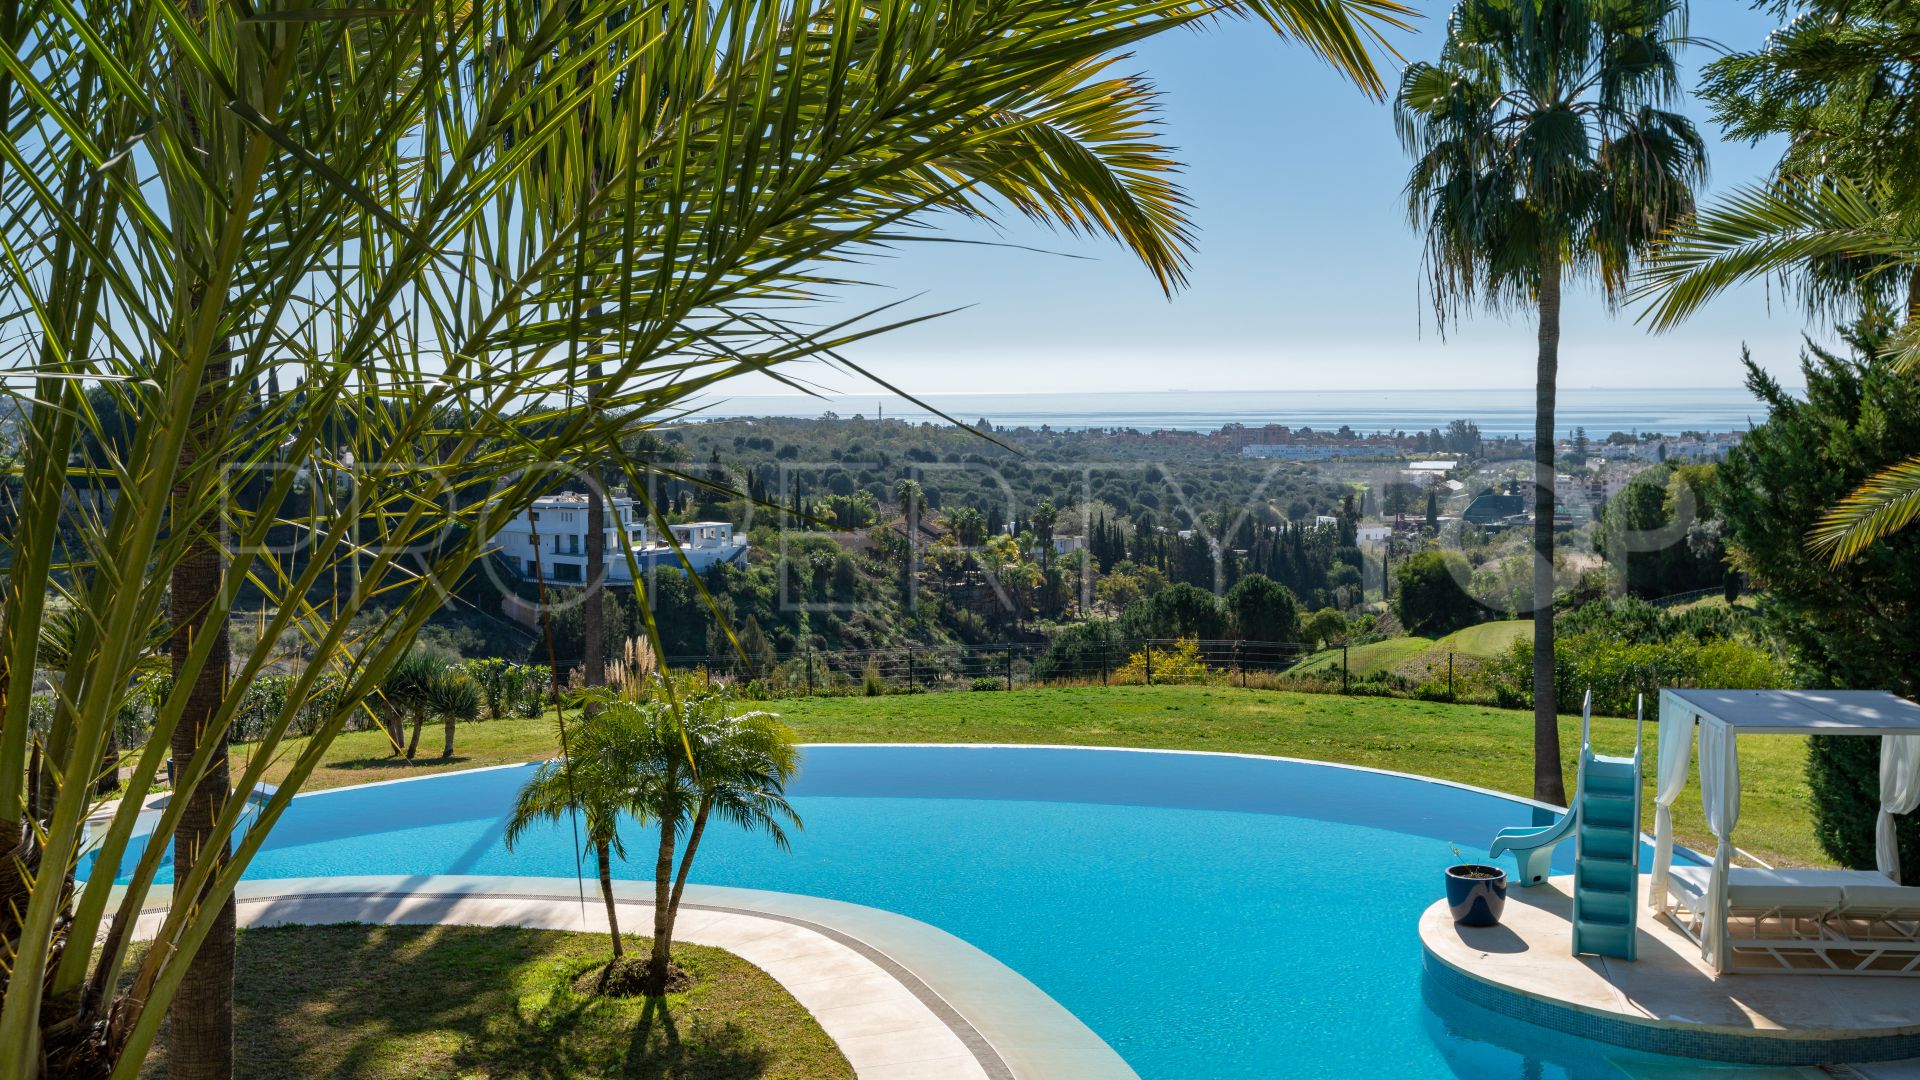 For sale villa with 8 bedrooms in Los Flamingos